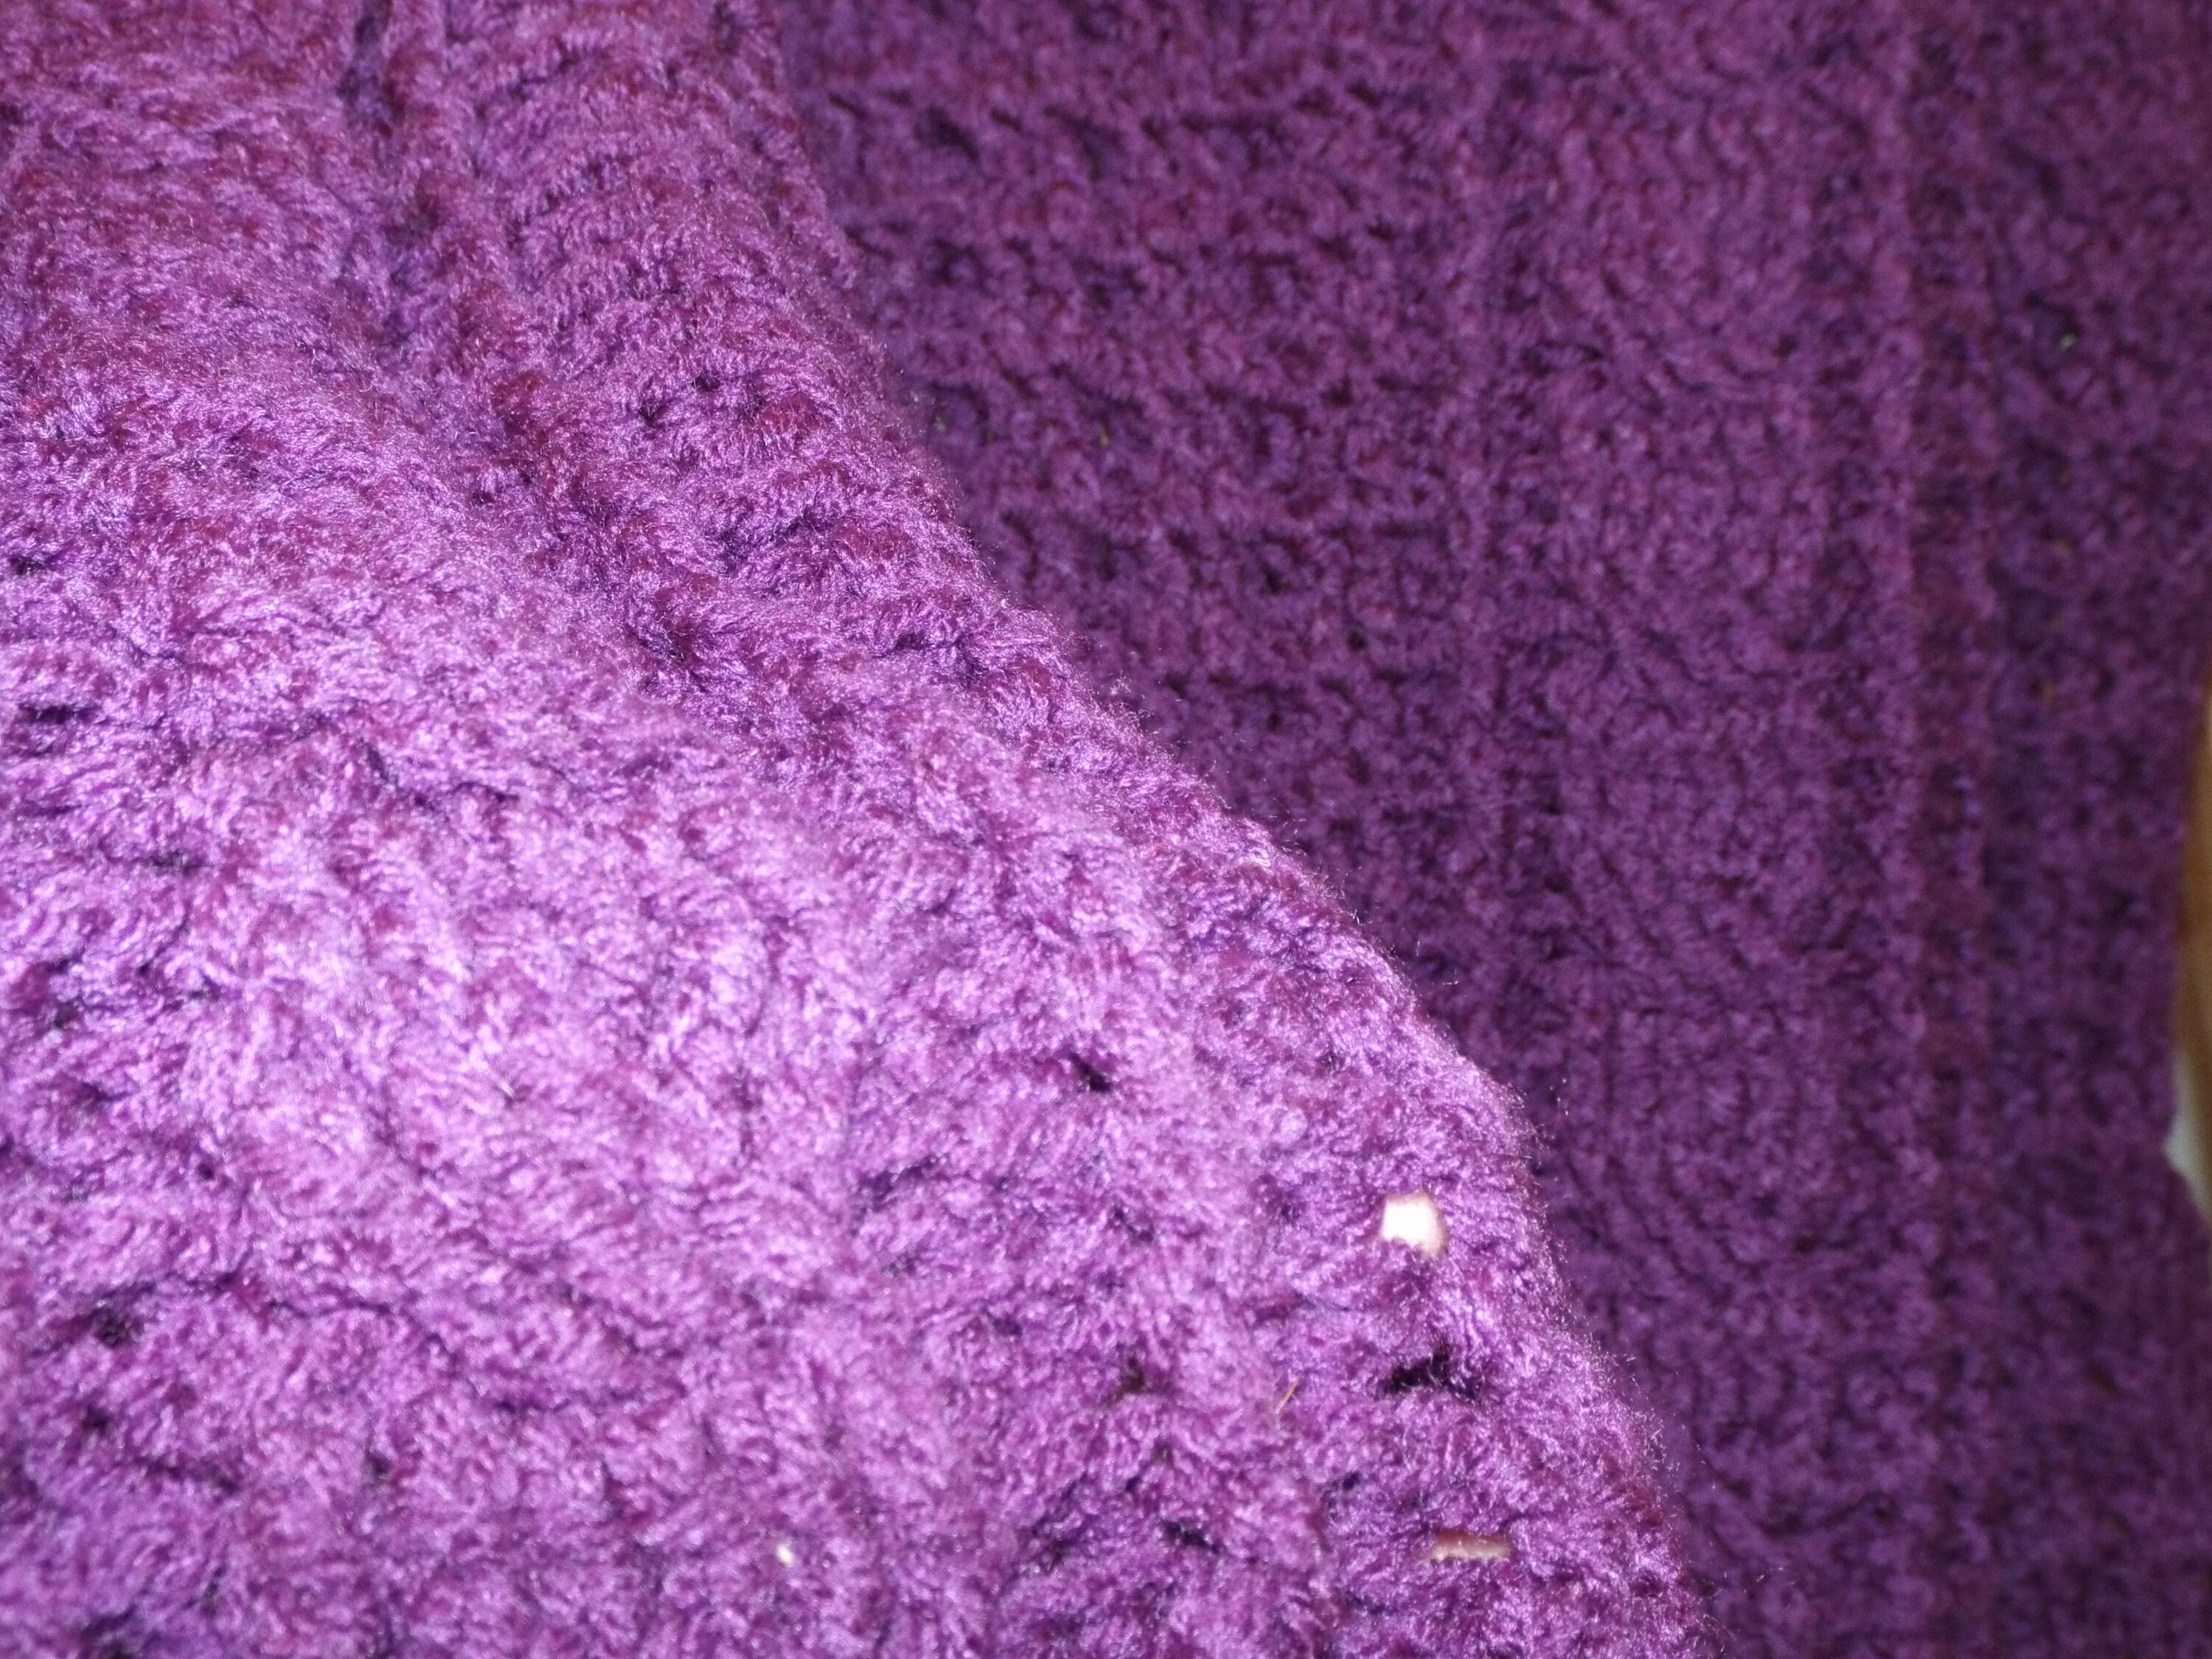 Deep Purple Crocheted Afghan Warm Winter Handmade Blanket | Etsy